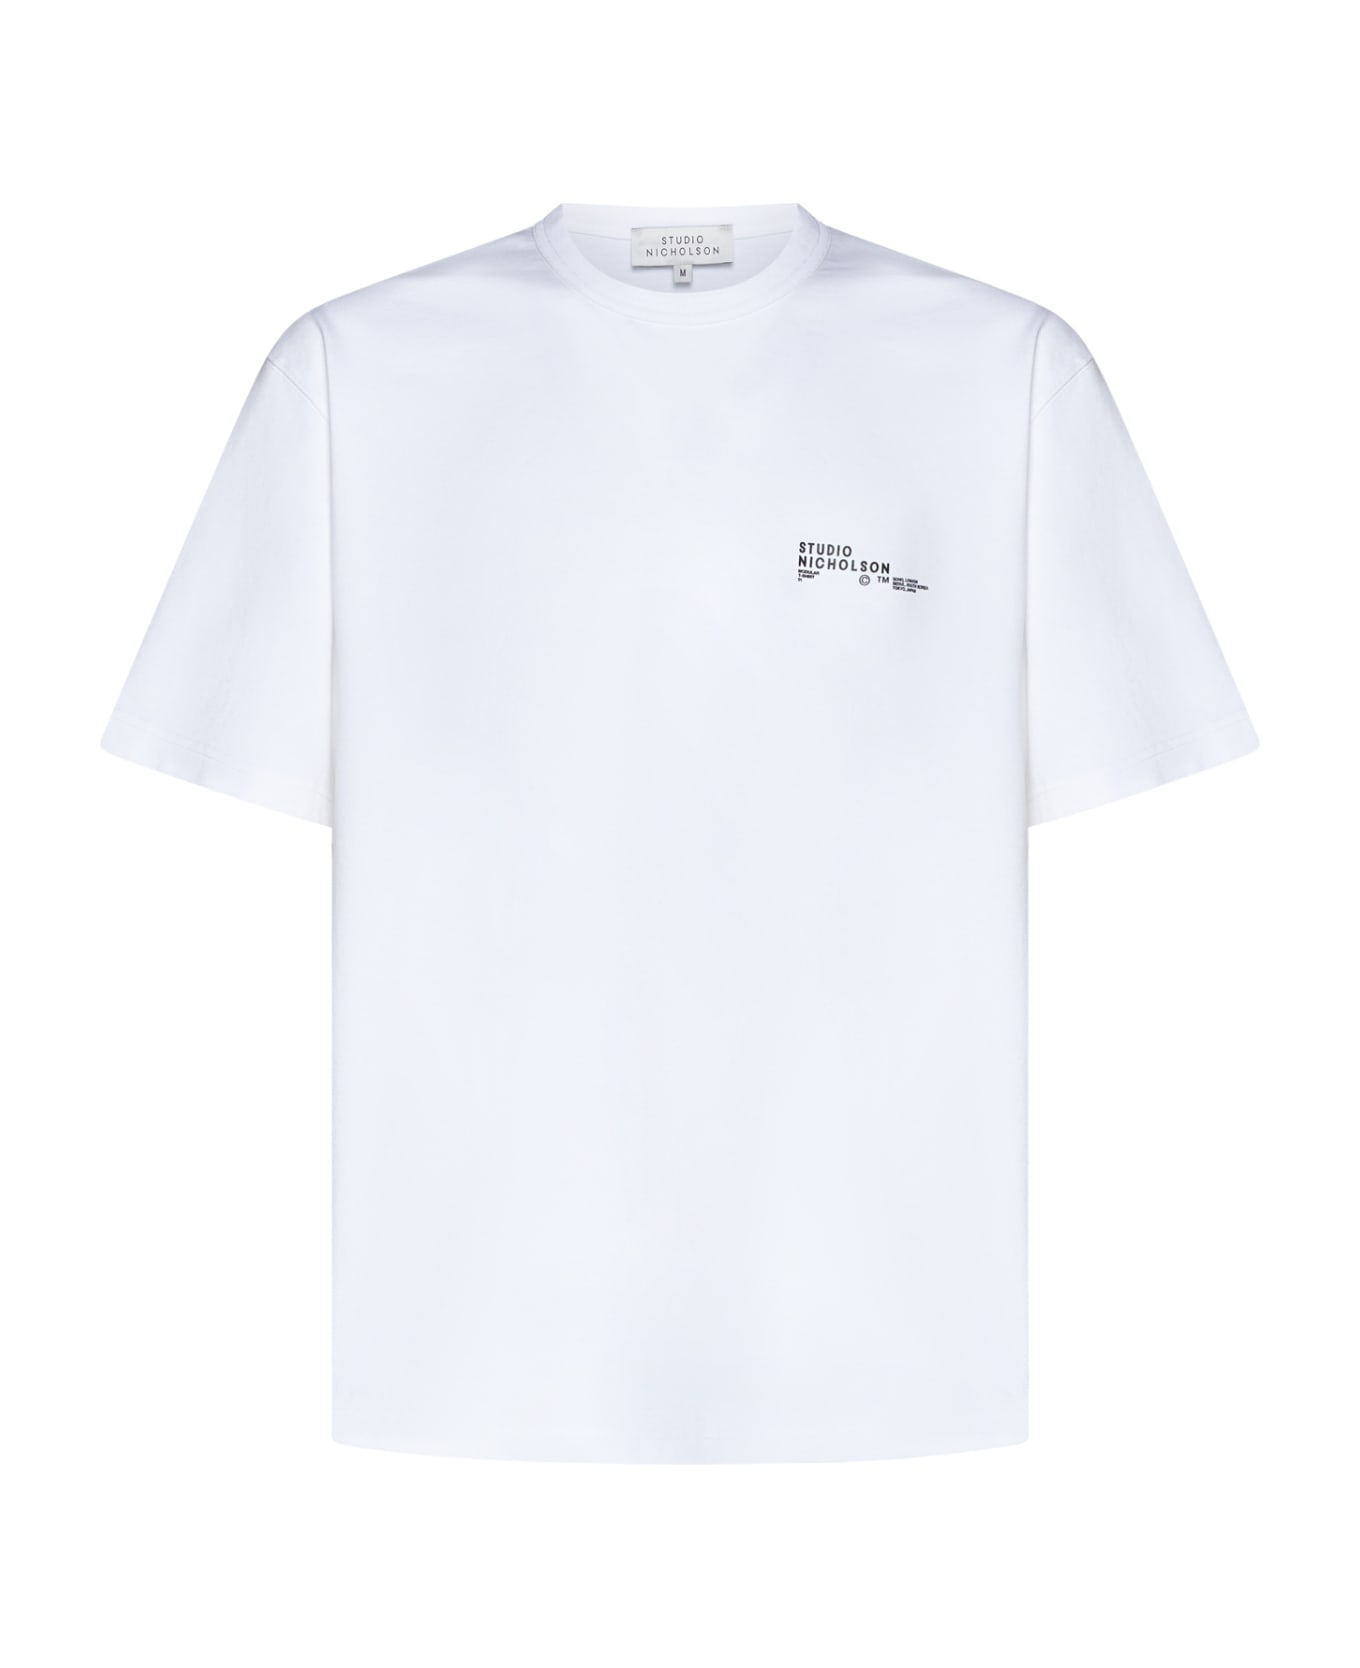 Studio Nicholson T-Shirt - White シャツ